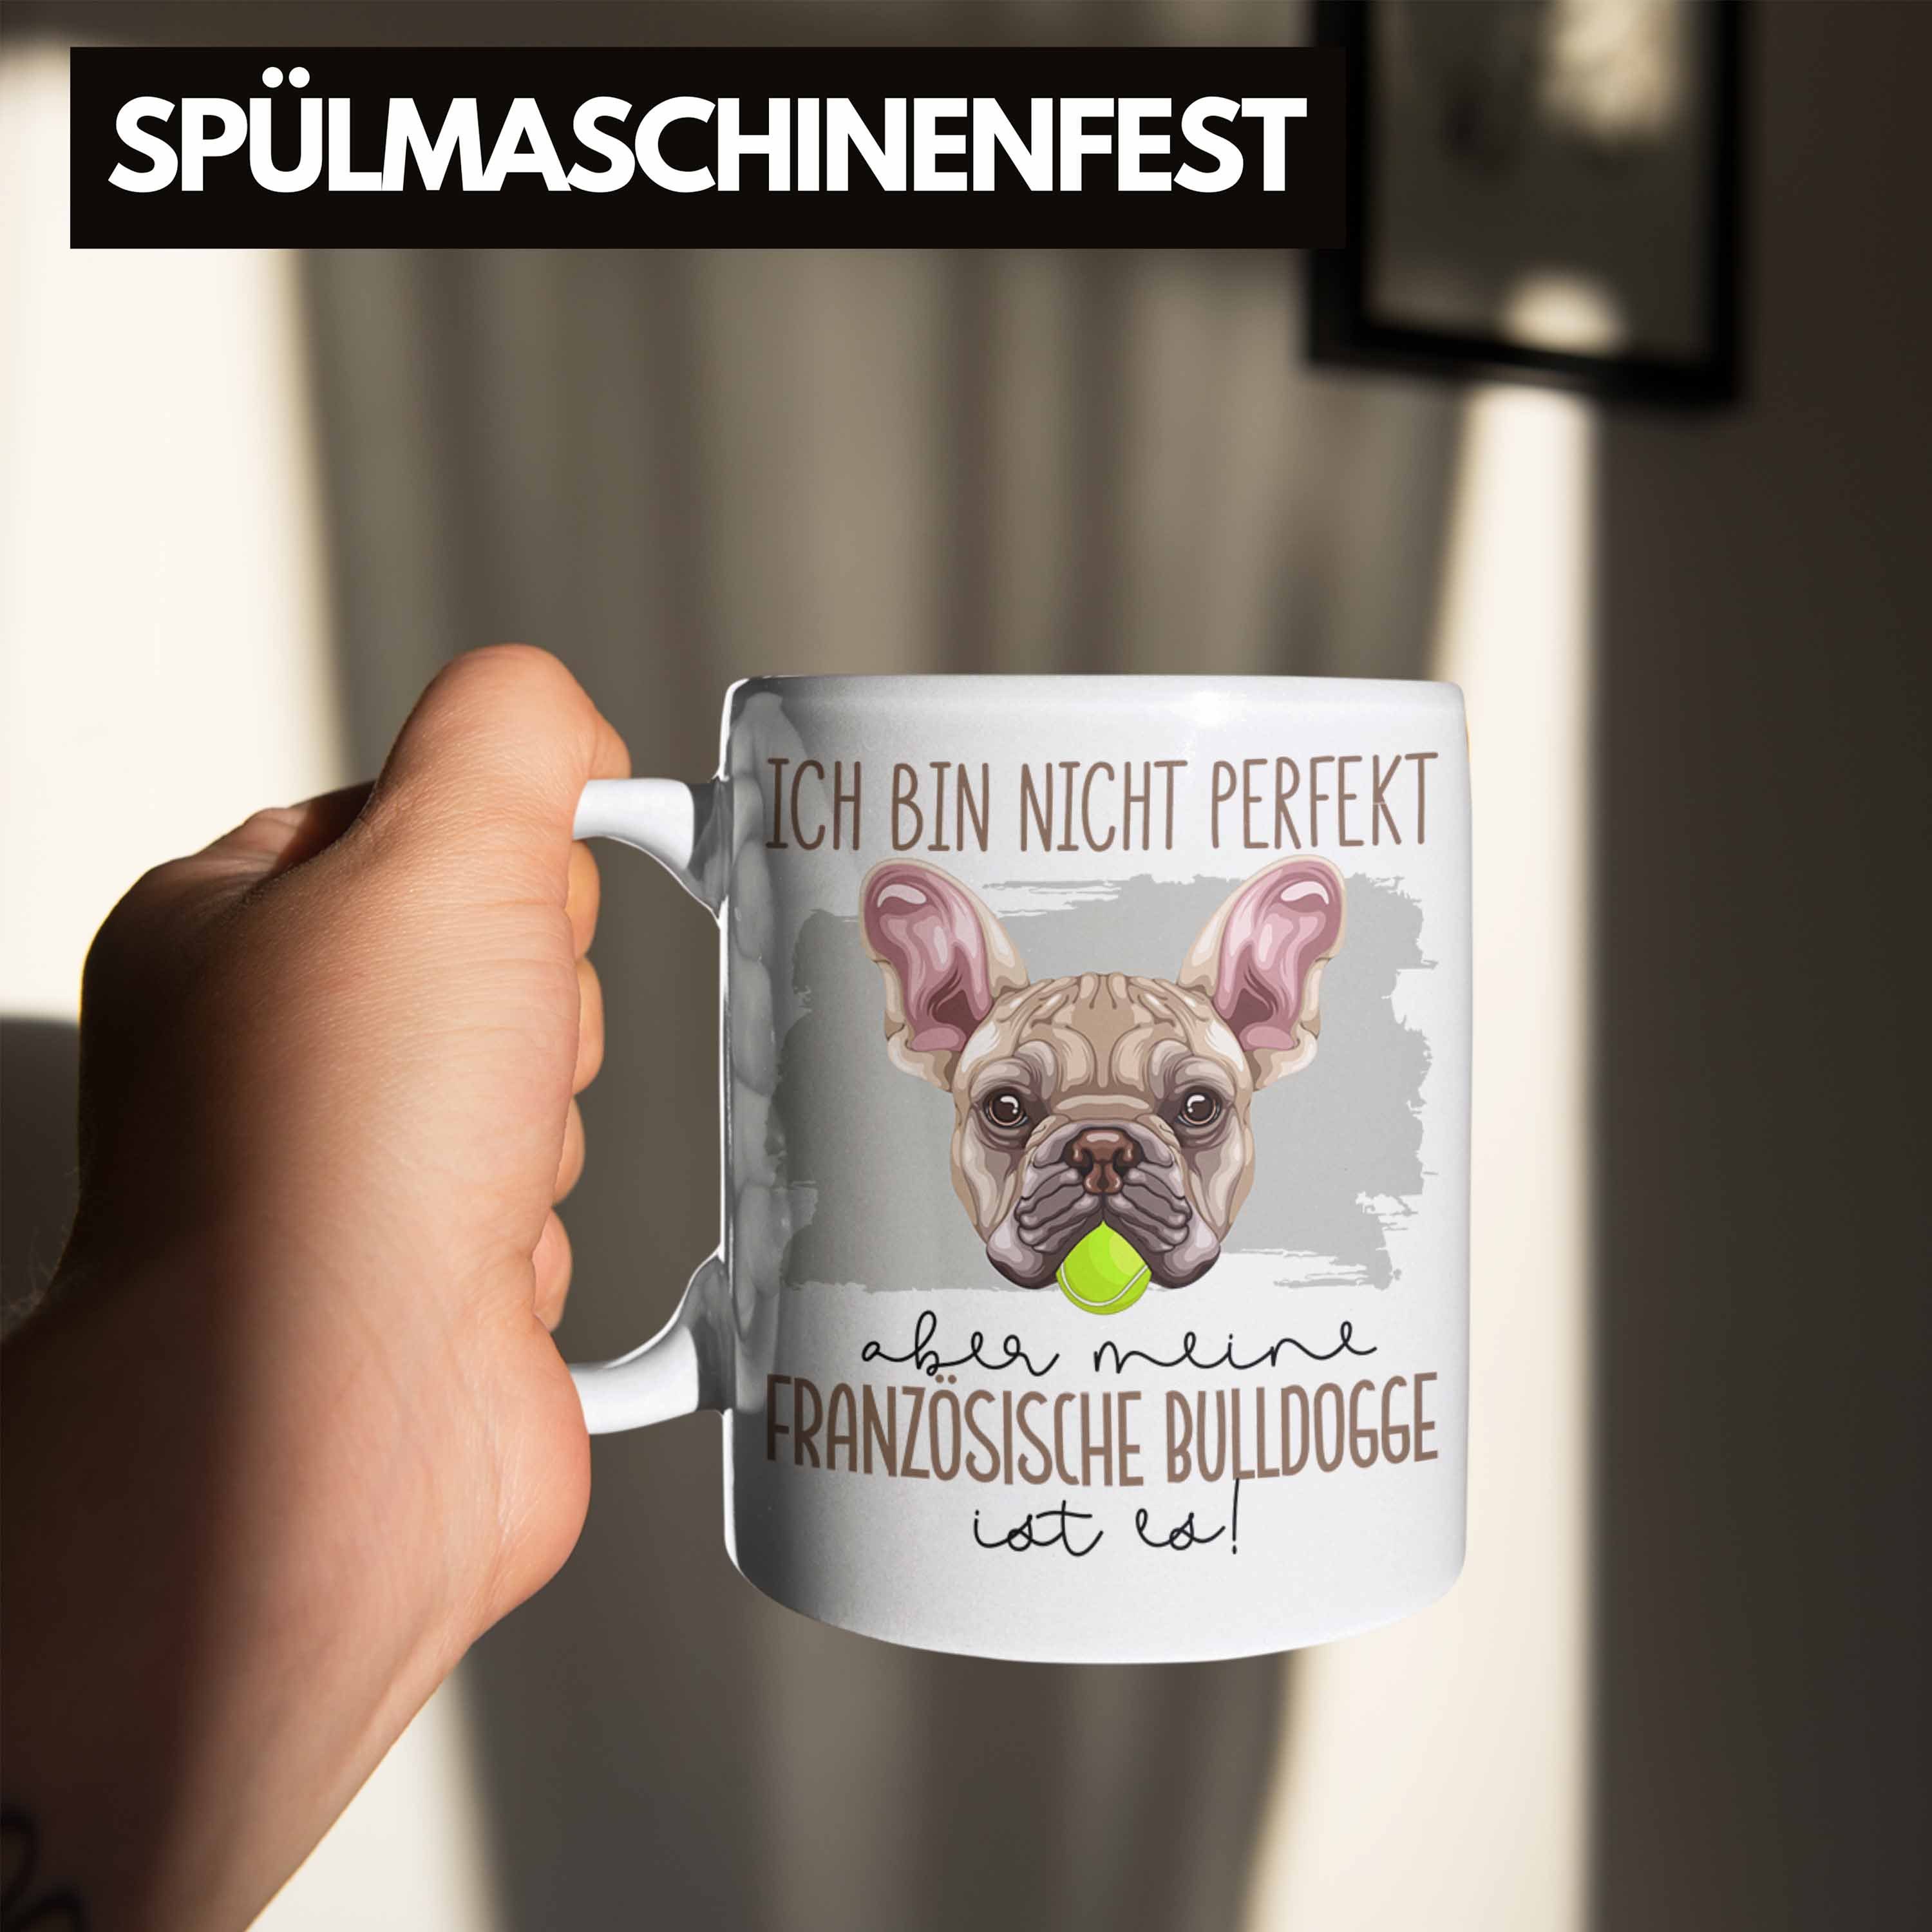 Trendation Tasse Bulldogge Geschen Französische Lustiger Weiss Besitzer Tasse Spruch Geschenk